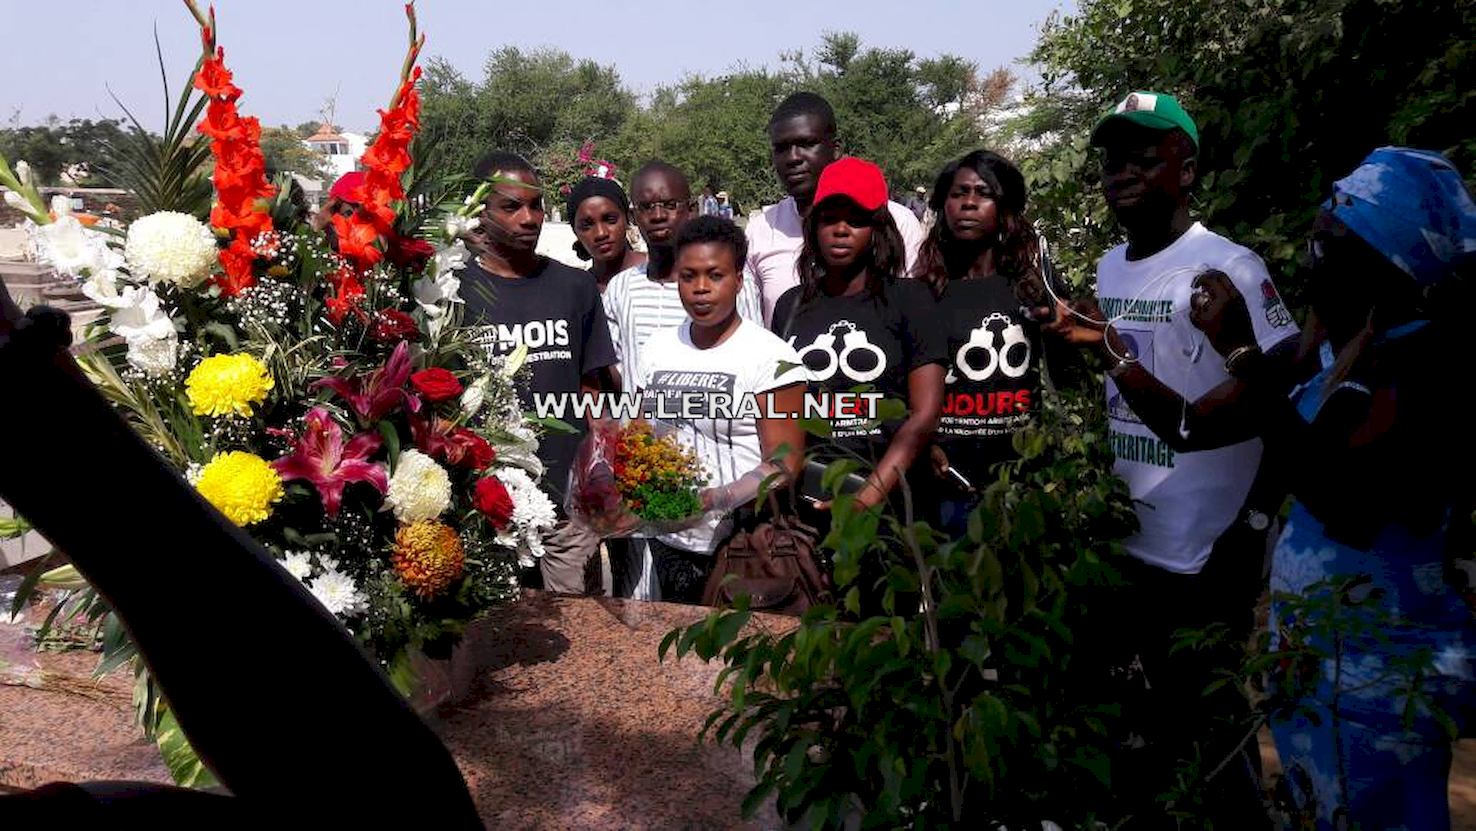 (Photos) Les jeunes socialistes se recueillant sur la tombe de Senghor en ce jour de Toussaint avec leurs tee shirt "Liberez khalifa".